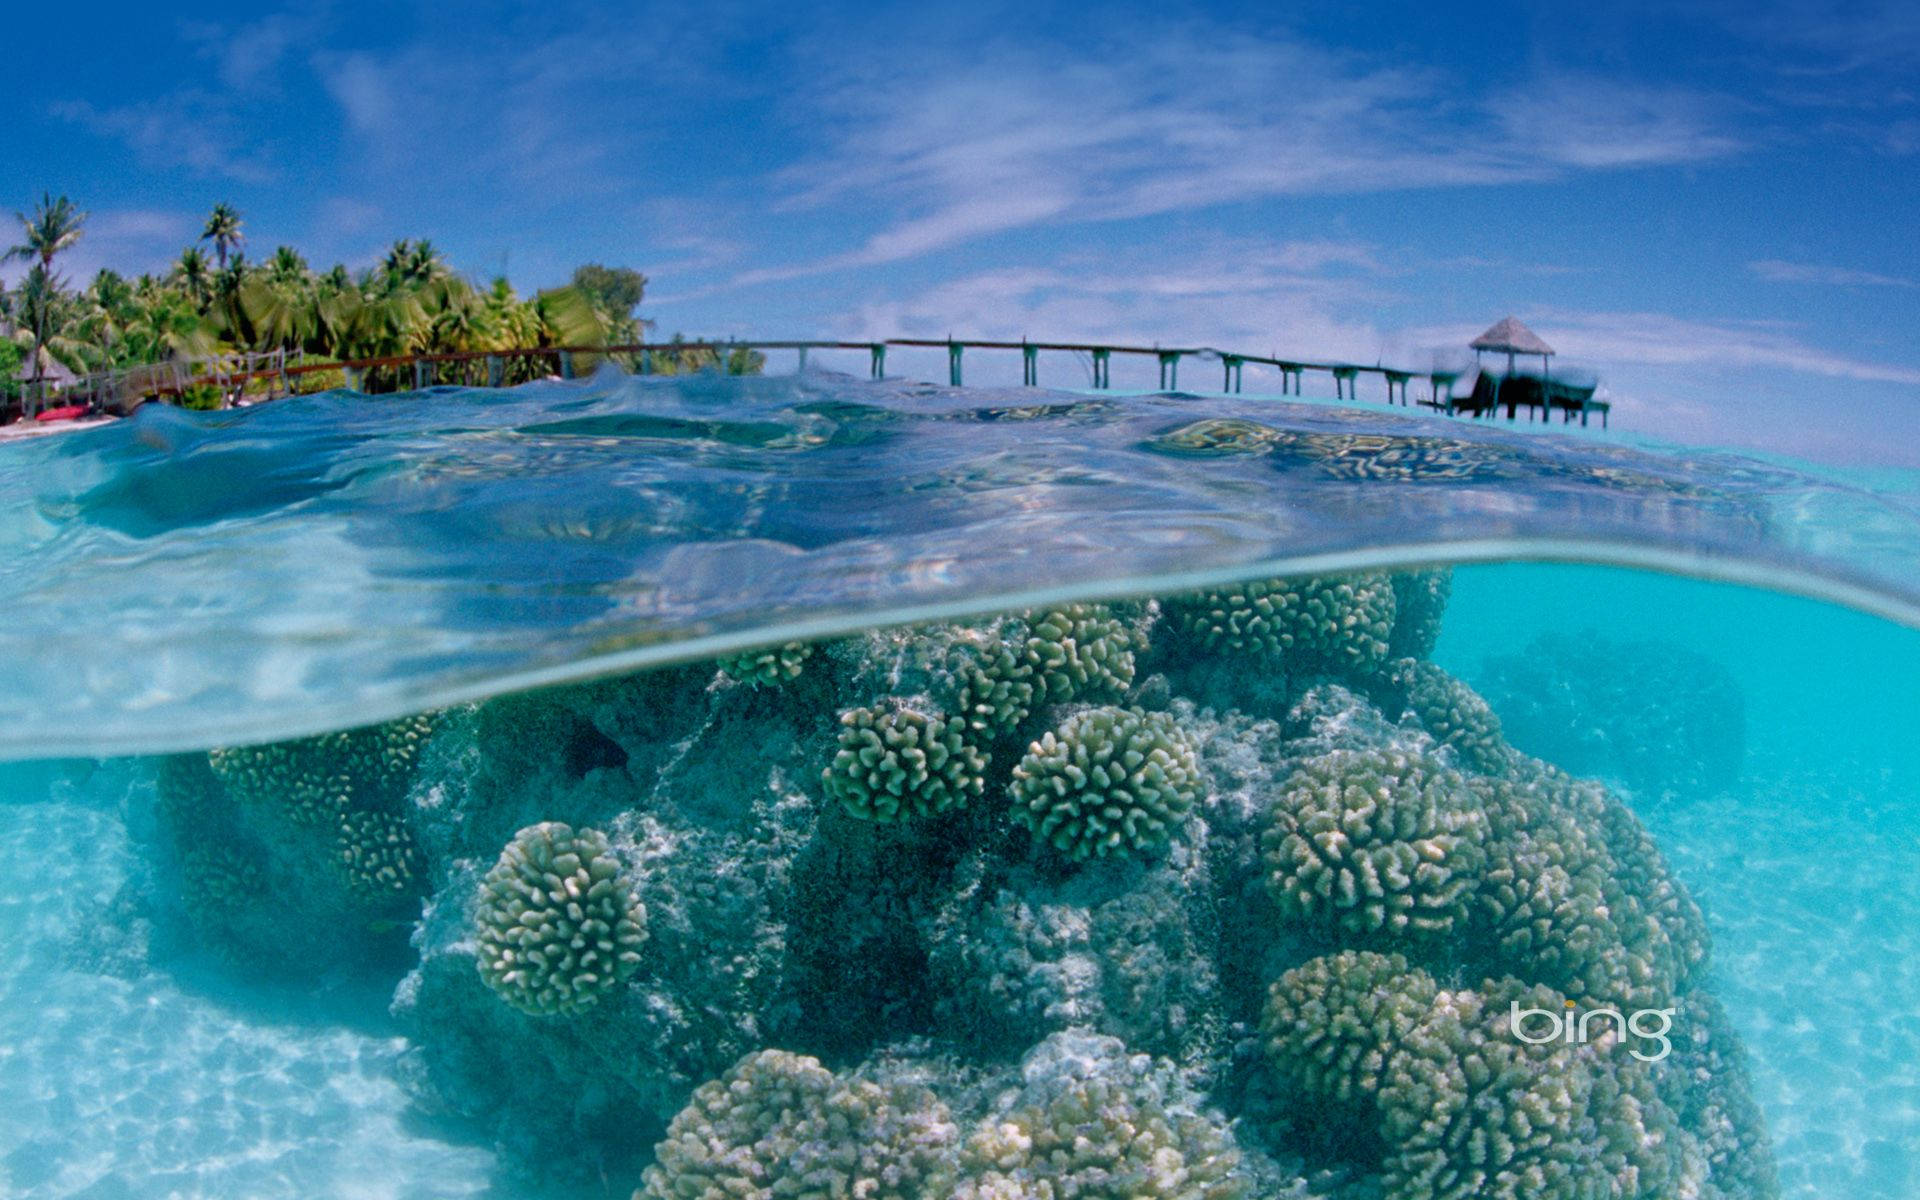 Sea and corals desktop wallpaper. 